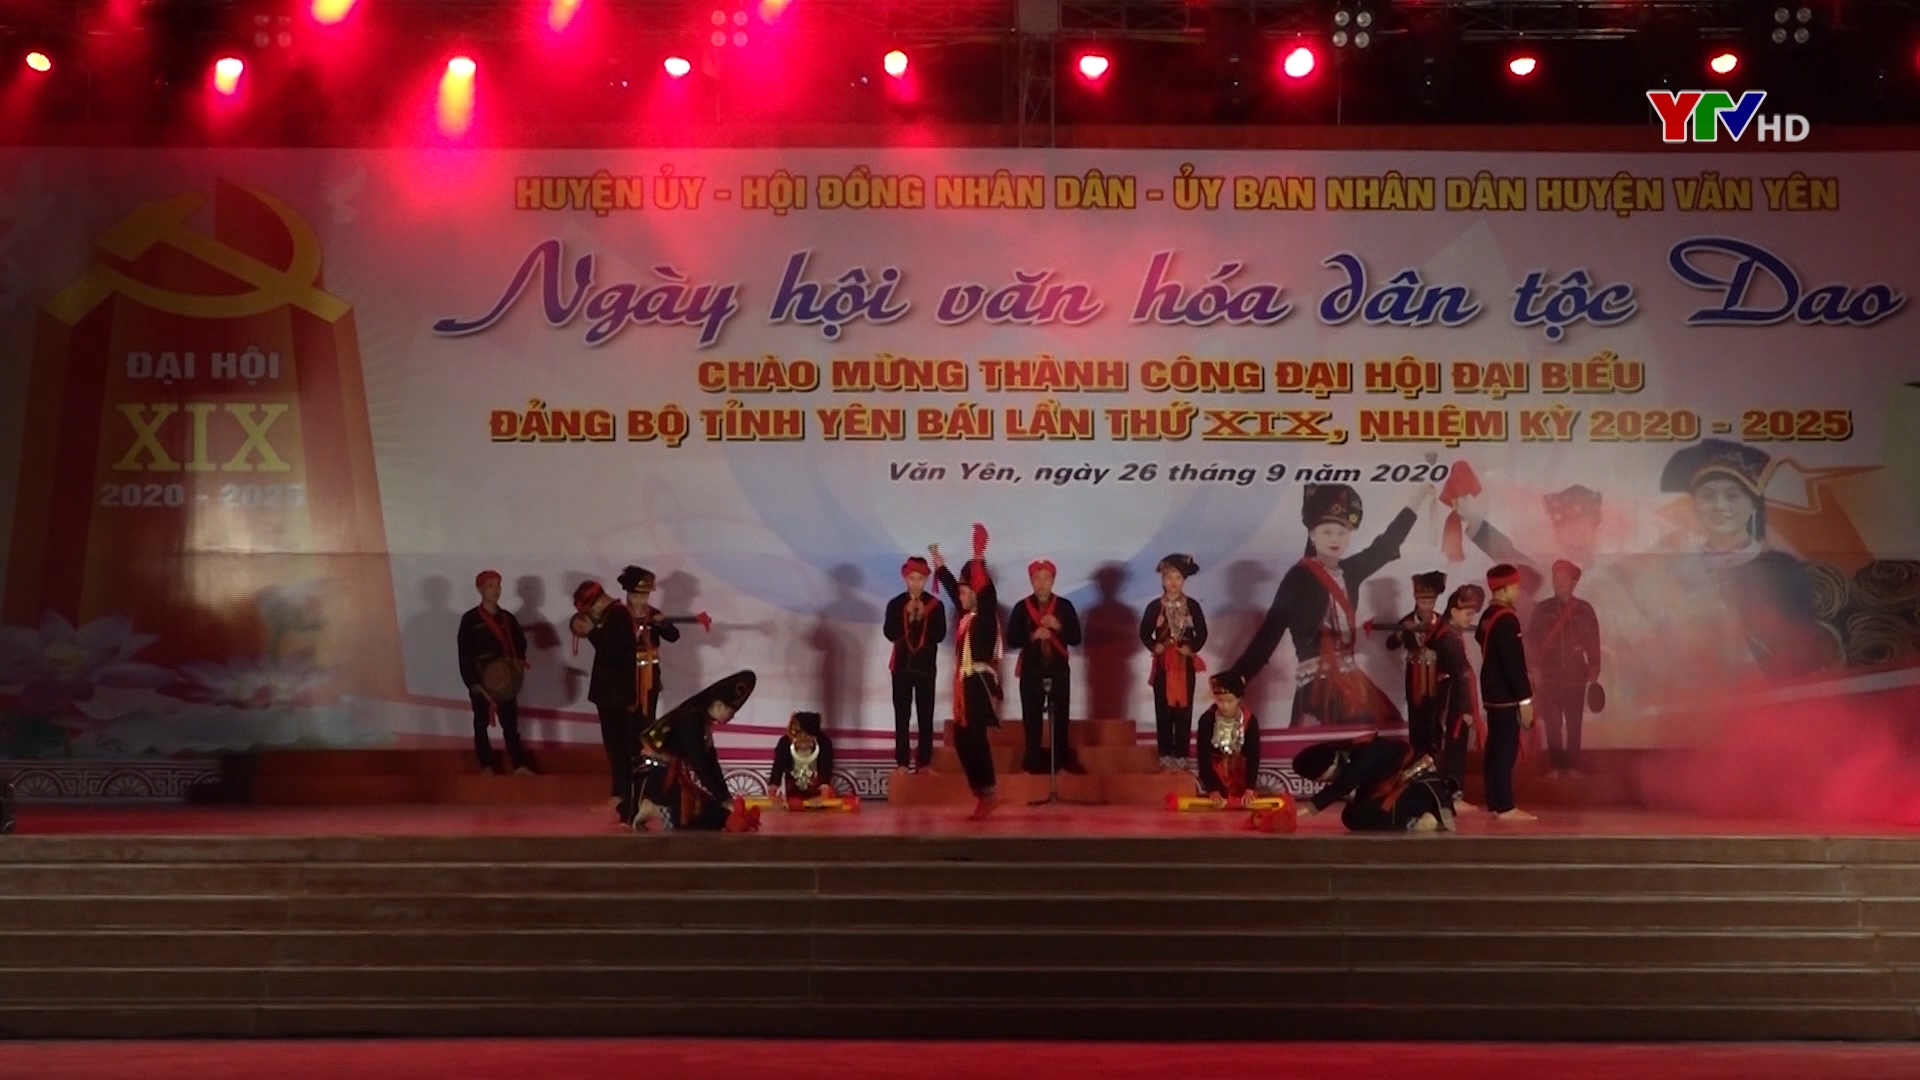 Huyện Văn Yên tổ chức chương trình nghệ thuật chào mừng thành công Đại hội Đảng bộ tỉnh Yên Bái lần thứ XIX